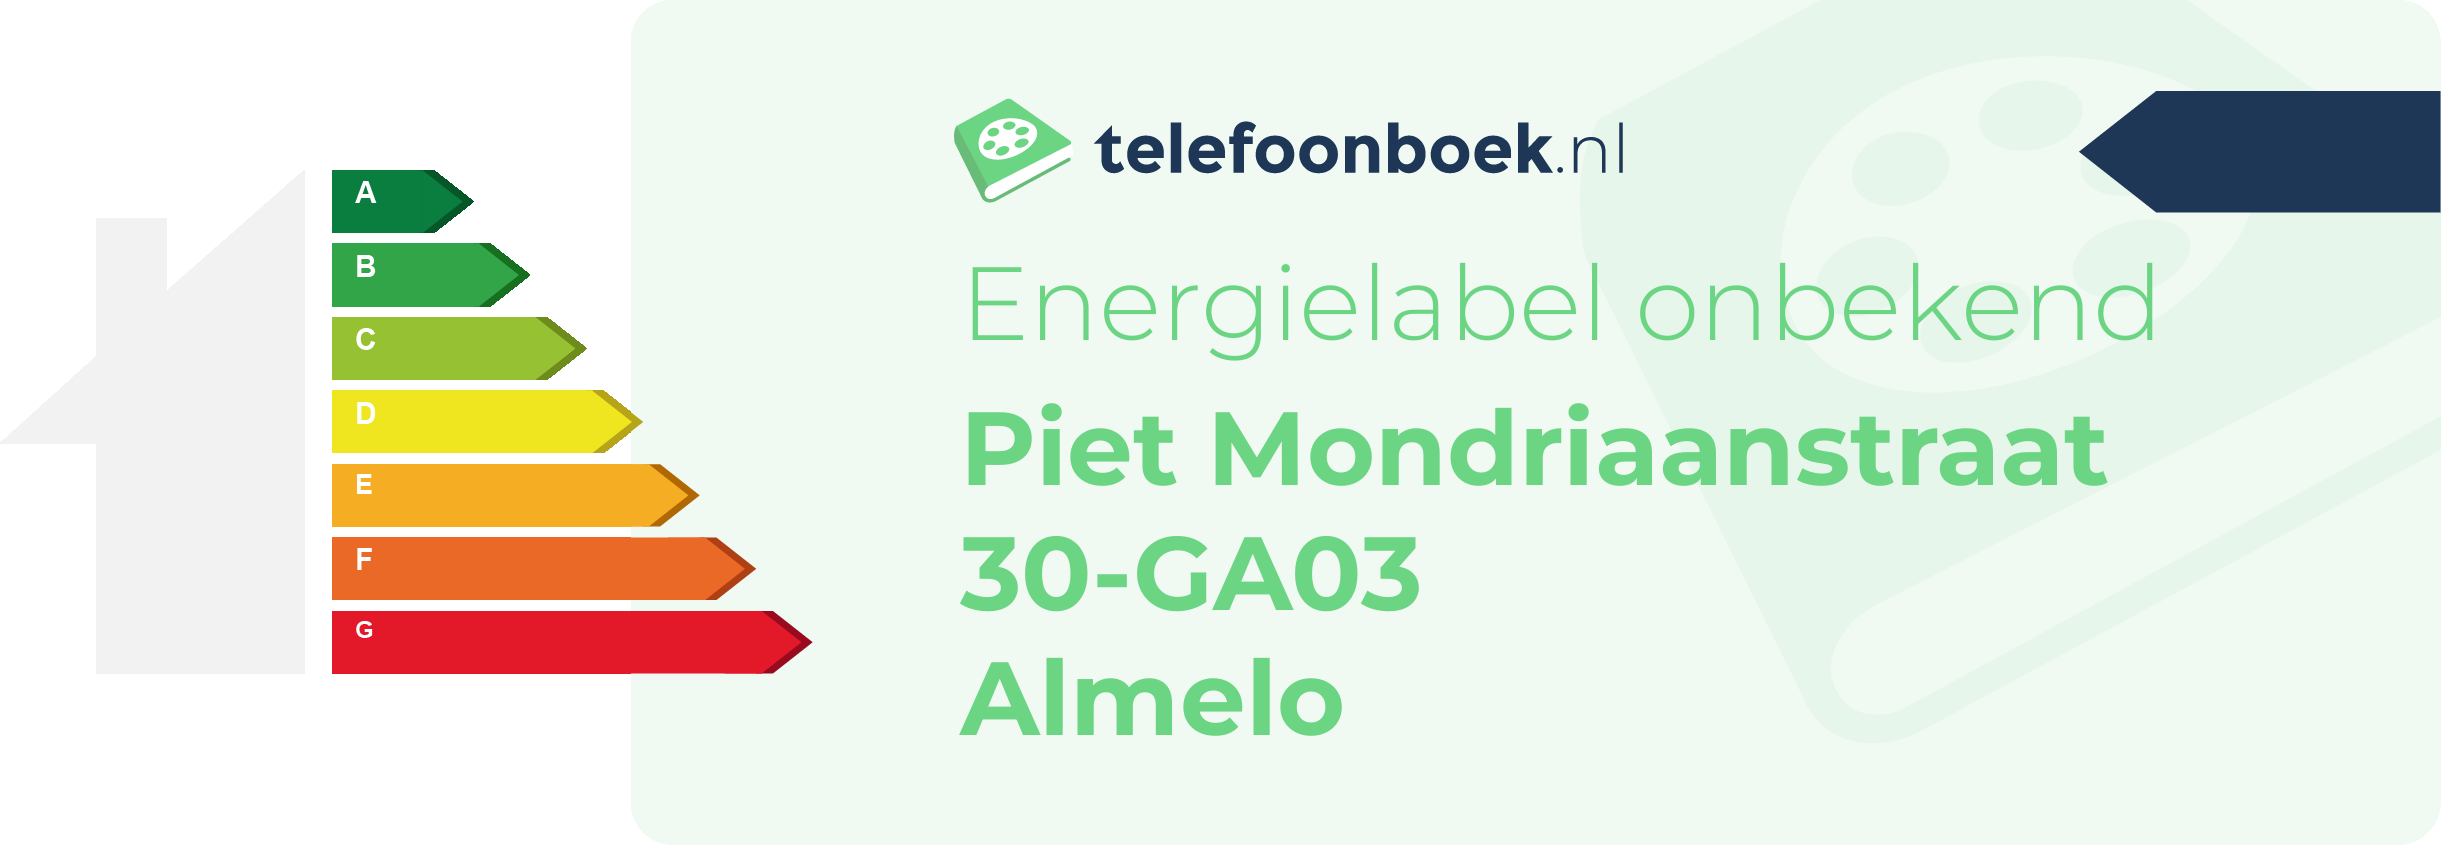 Energielabel Piet Mondriaanstraat 30-GA03 Almelo